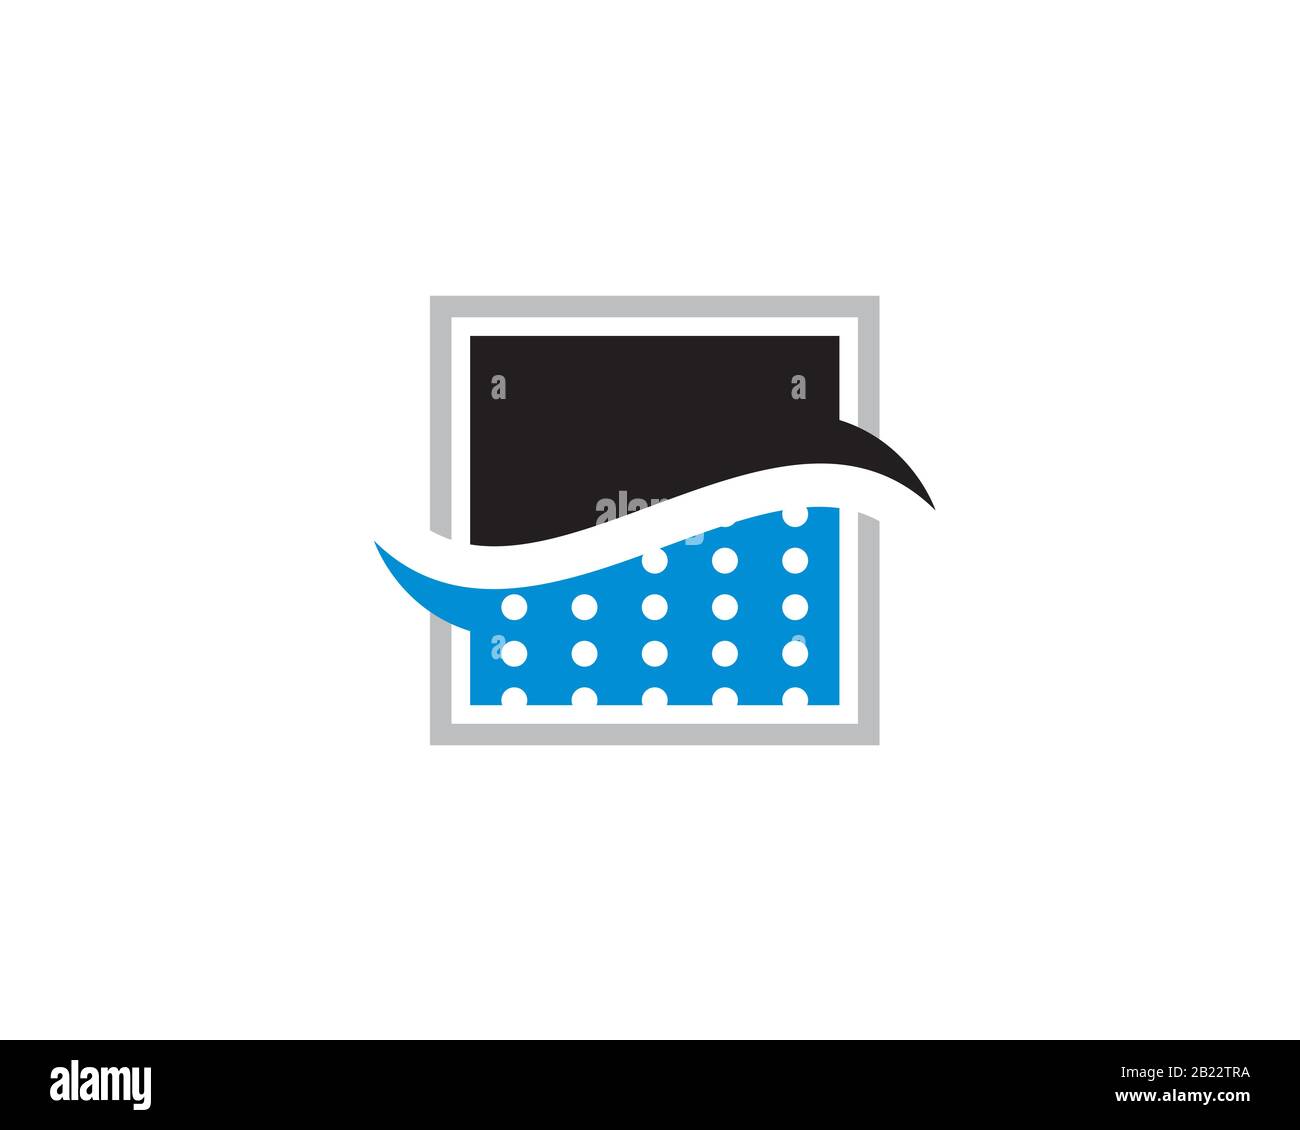 Quadratisches zweifarbiges Logo mit Wellenströmwasser und Tropfen Tröpfchen, die den Filterprozess zeigen Stock Vektor